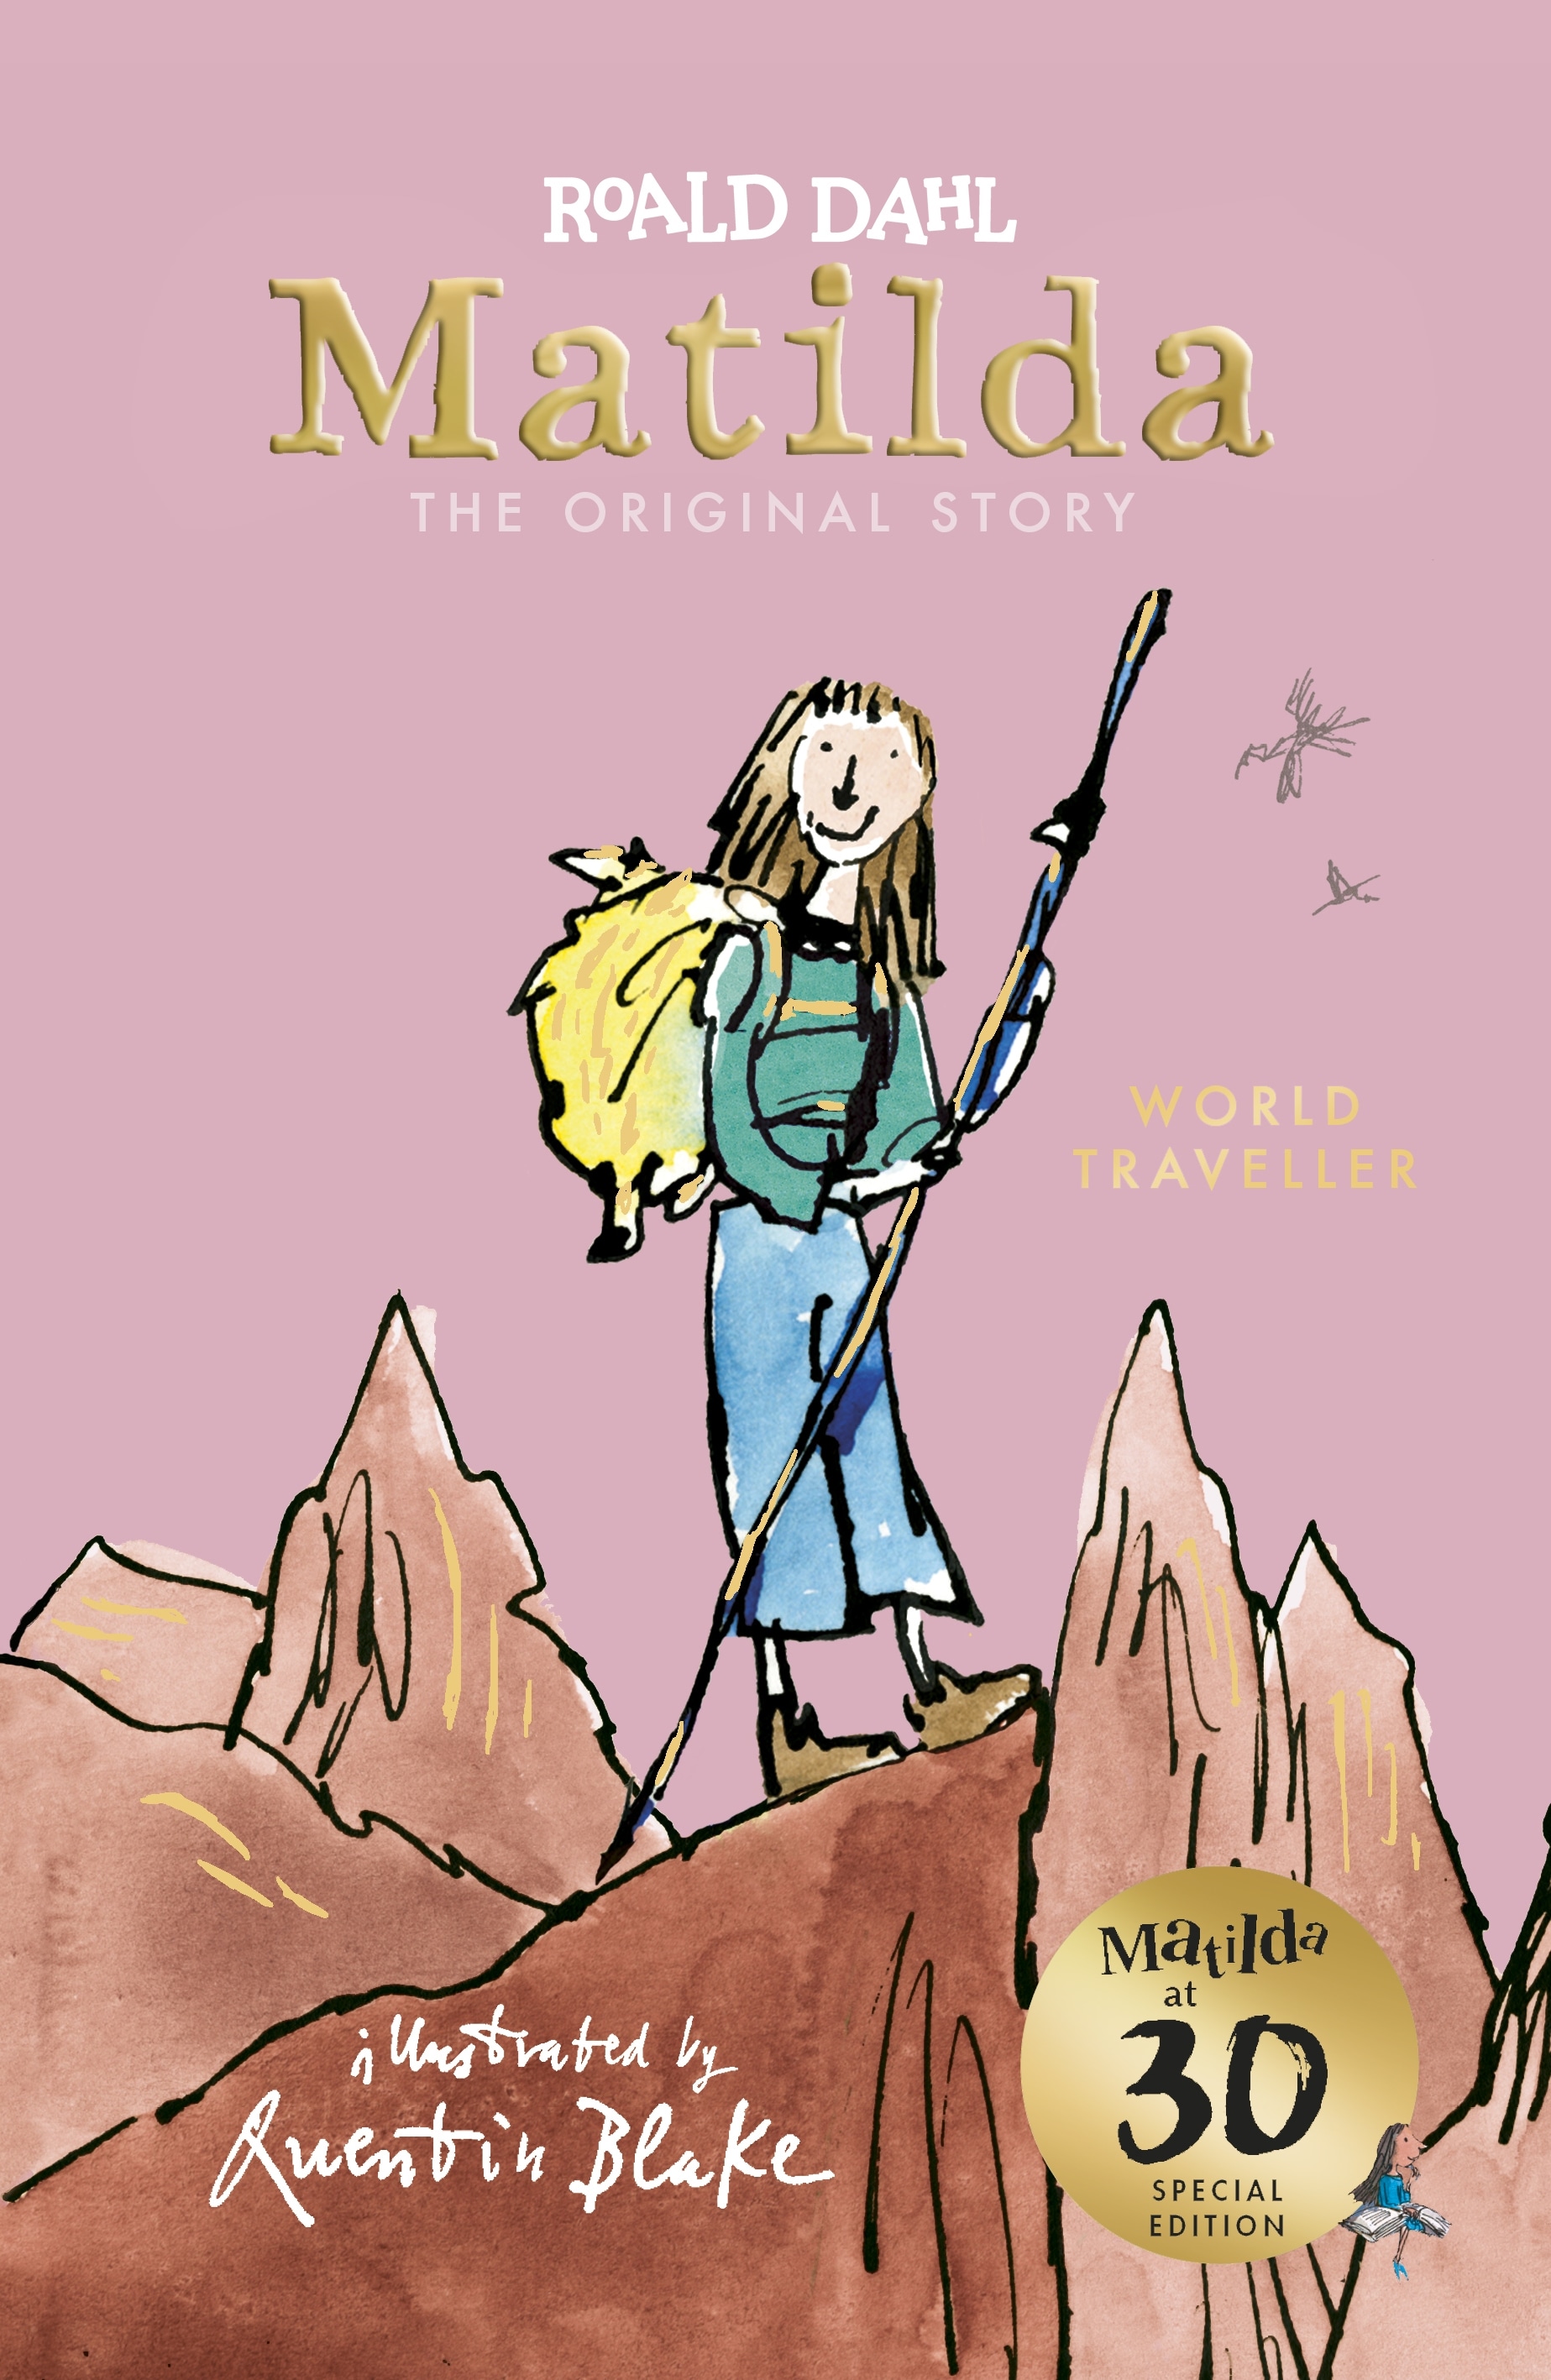 Book “Matilda at 30: World Traveller” by Roald Dahl, Quentin Blake — September 5, 2019